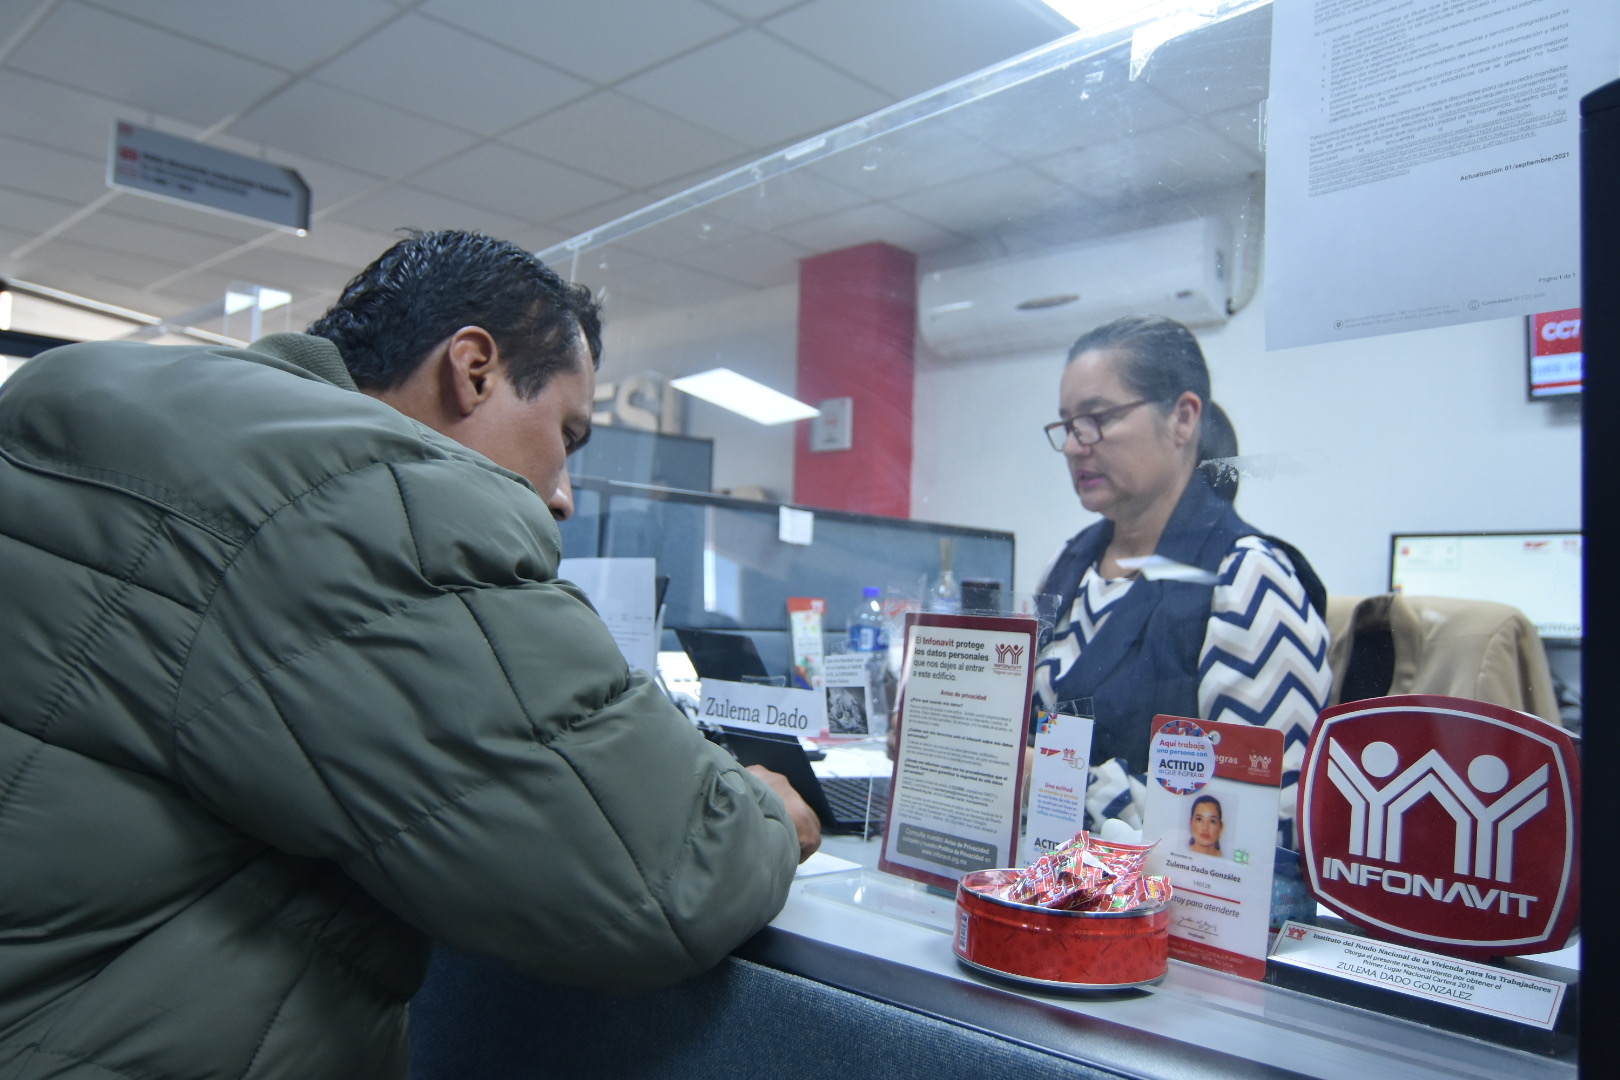 Usuarios prefieren asistir al Centro de Servicio Infonavit, para solicitar realizar su trámite. (Foto: SERGIO A. RODRÍGUEZ / EL SIGLO COAHUILA)